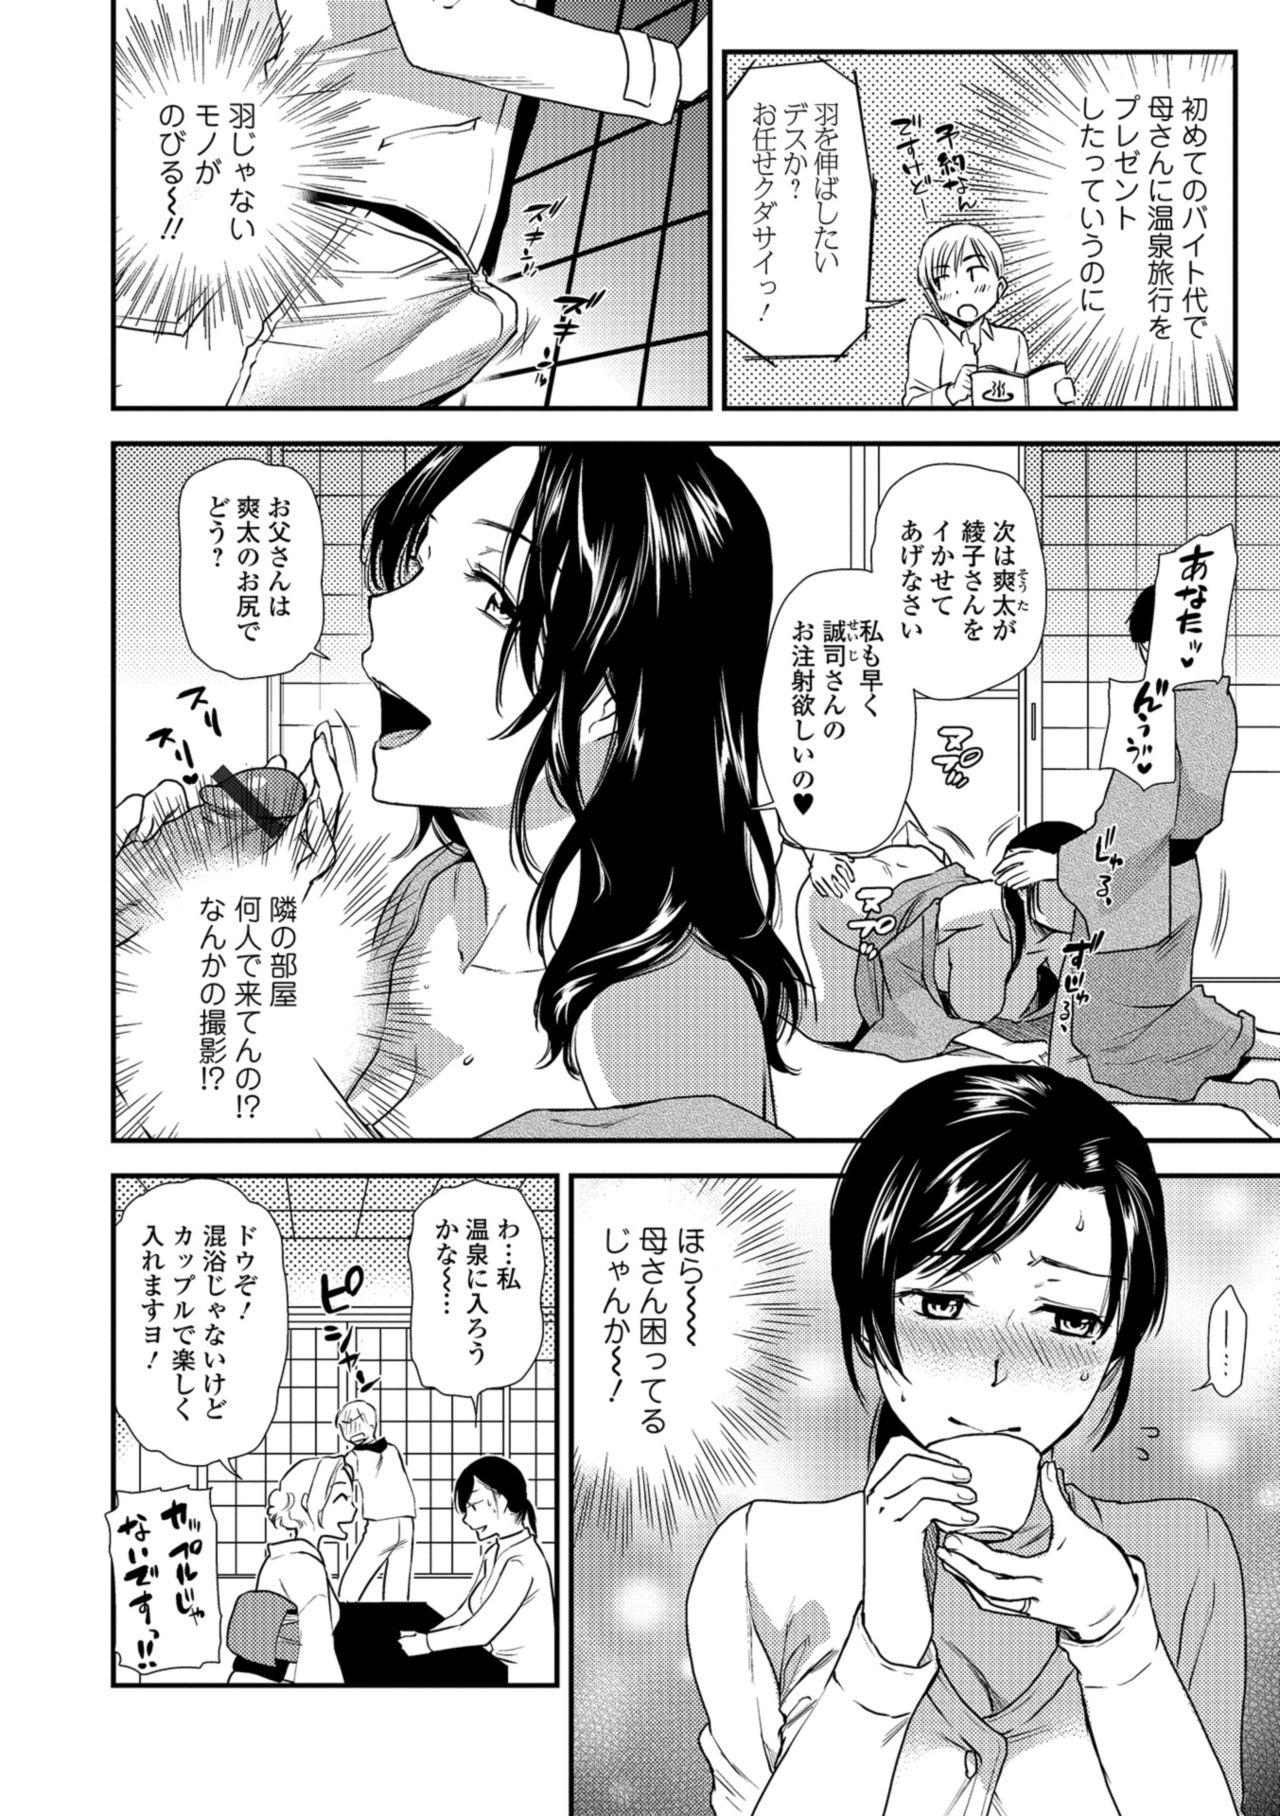 Face Web Comic Toutetsu Vol. 34 Clit - Page 4